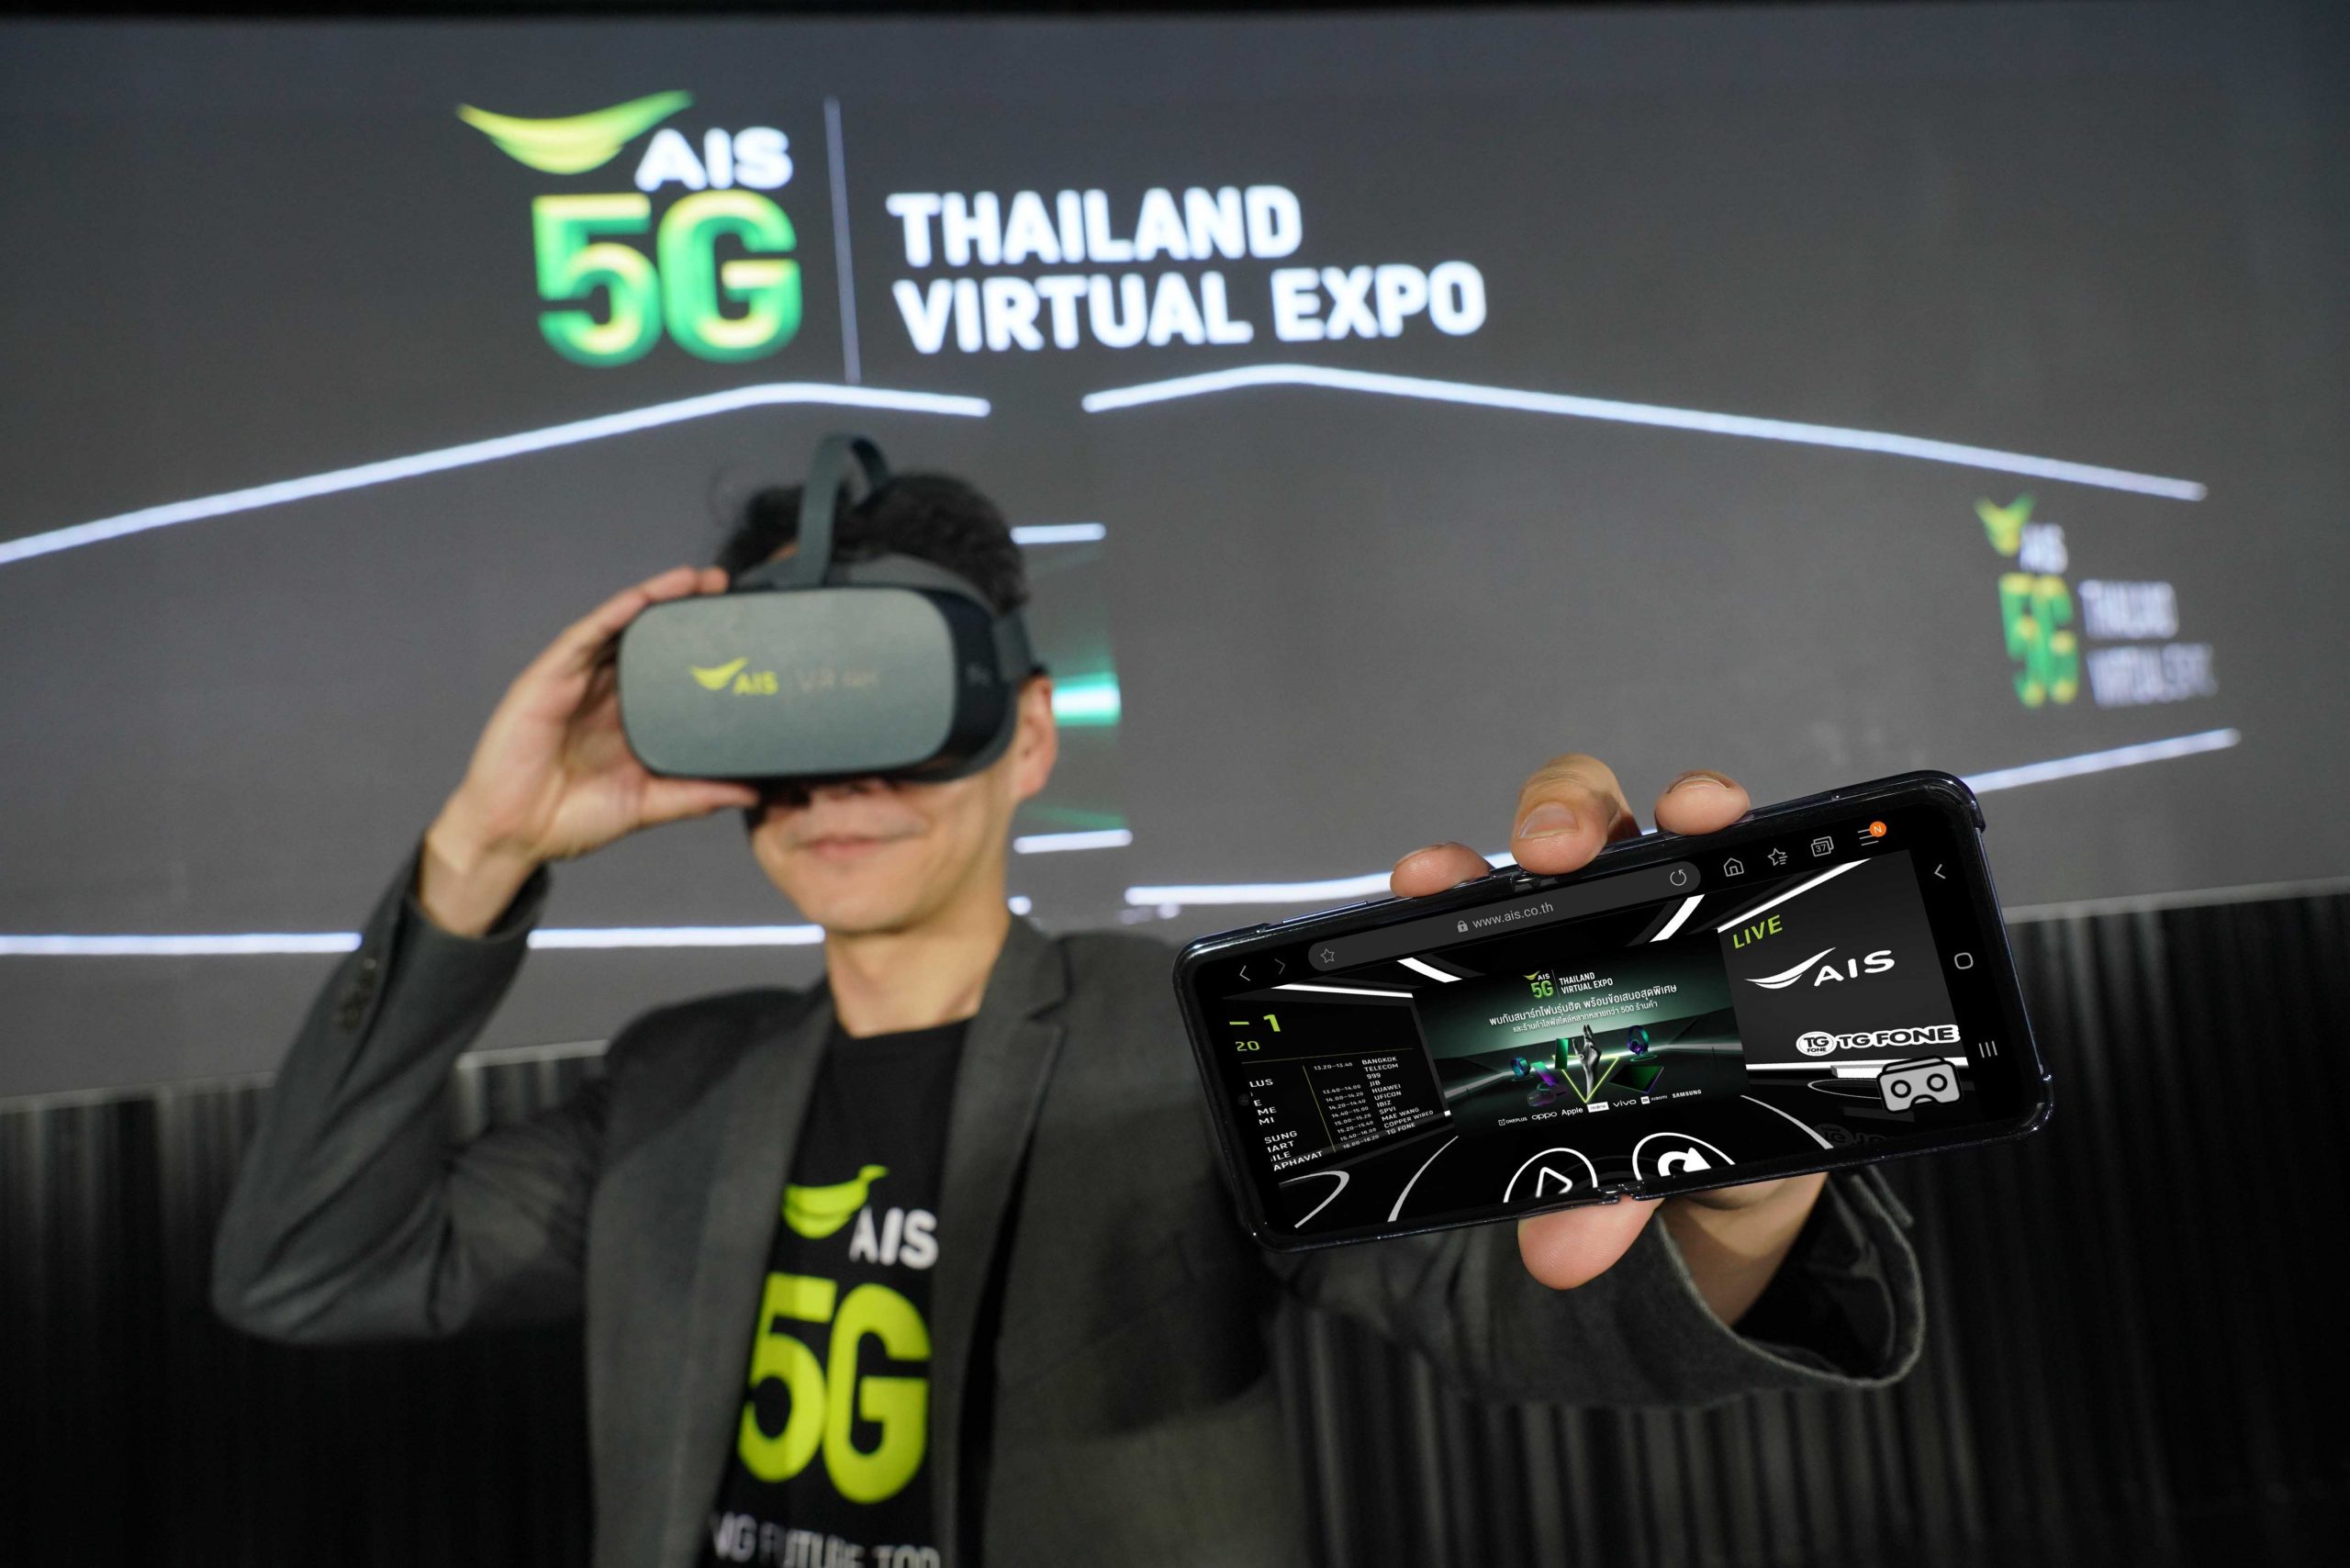 AIS 5G Thailand Virtual Expo ปรากฏการณ์แรกในไทย! มหกรรมสินค้าโมบาย/อาหาร/ไลฟ์สไตล์ บนโลกเสมือนจริง Virtual